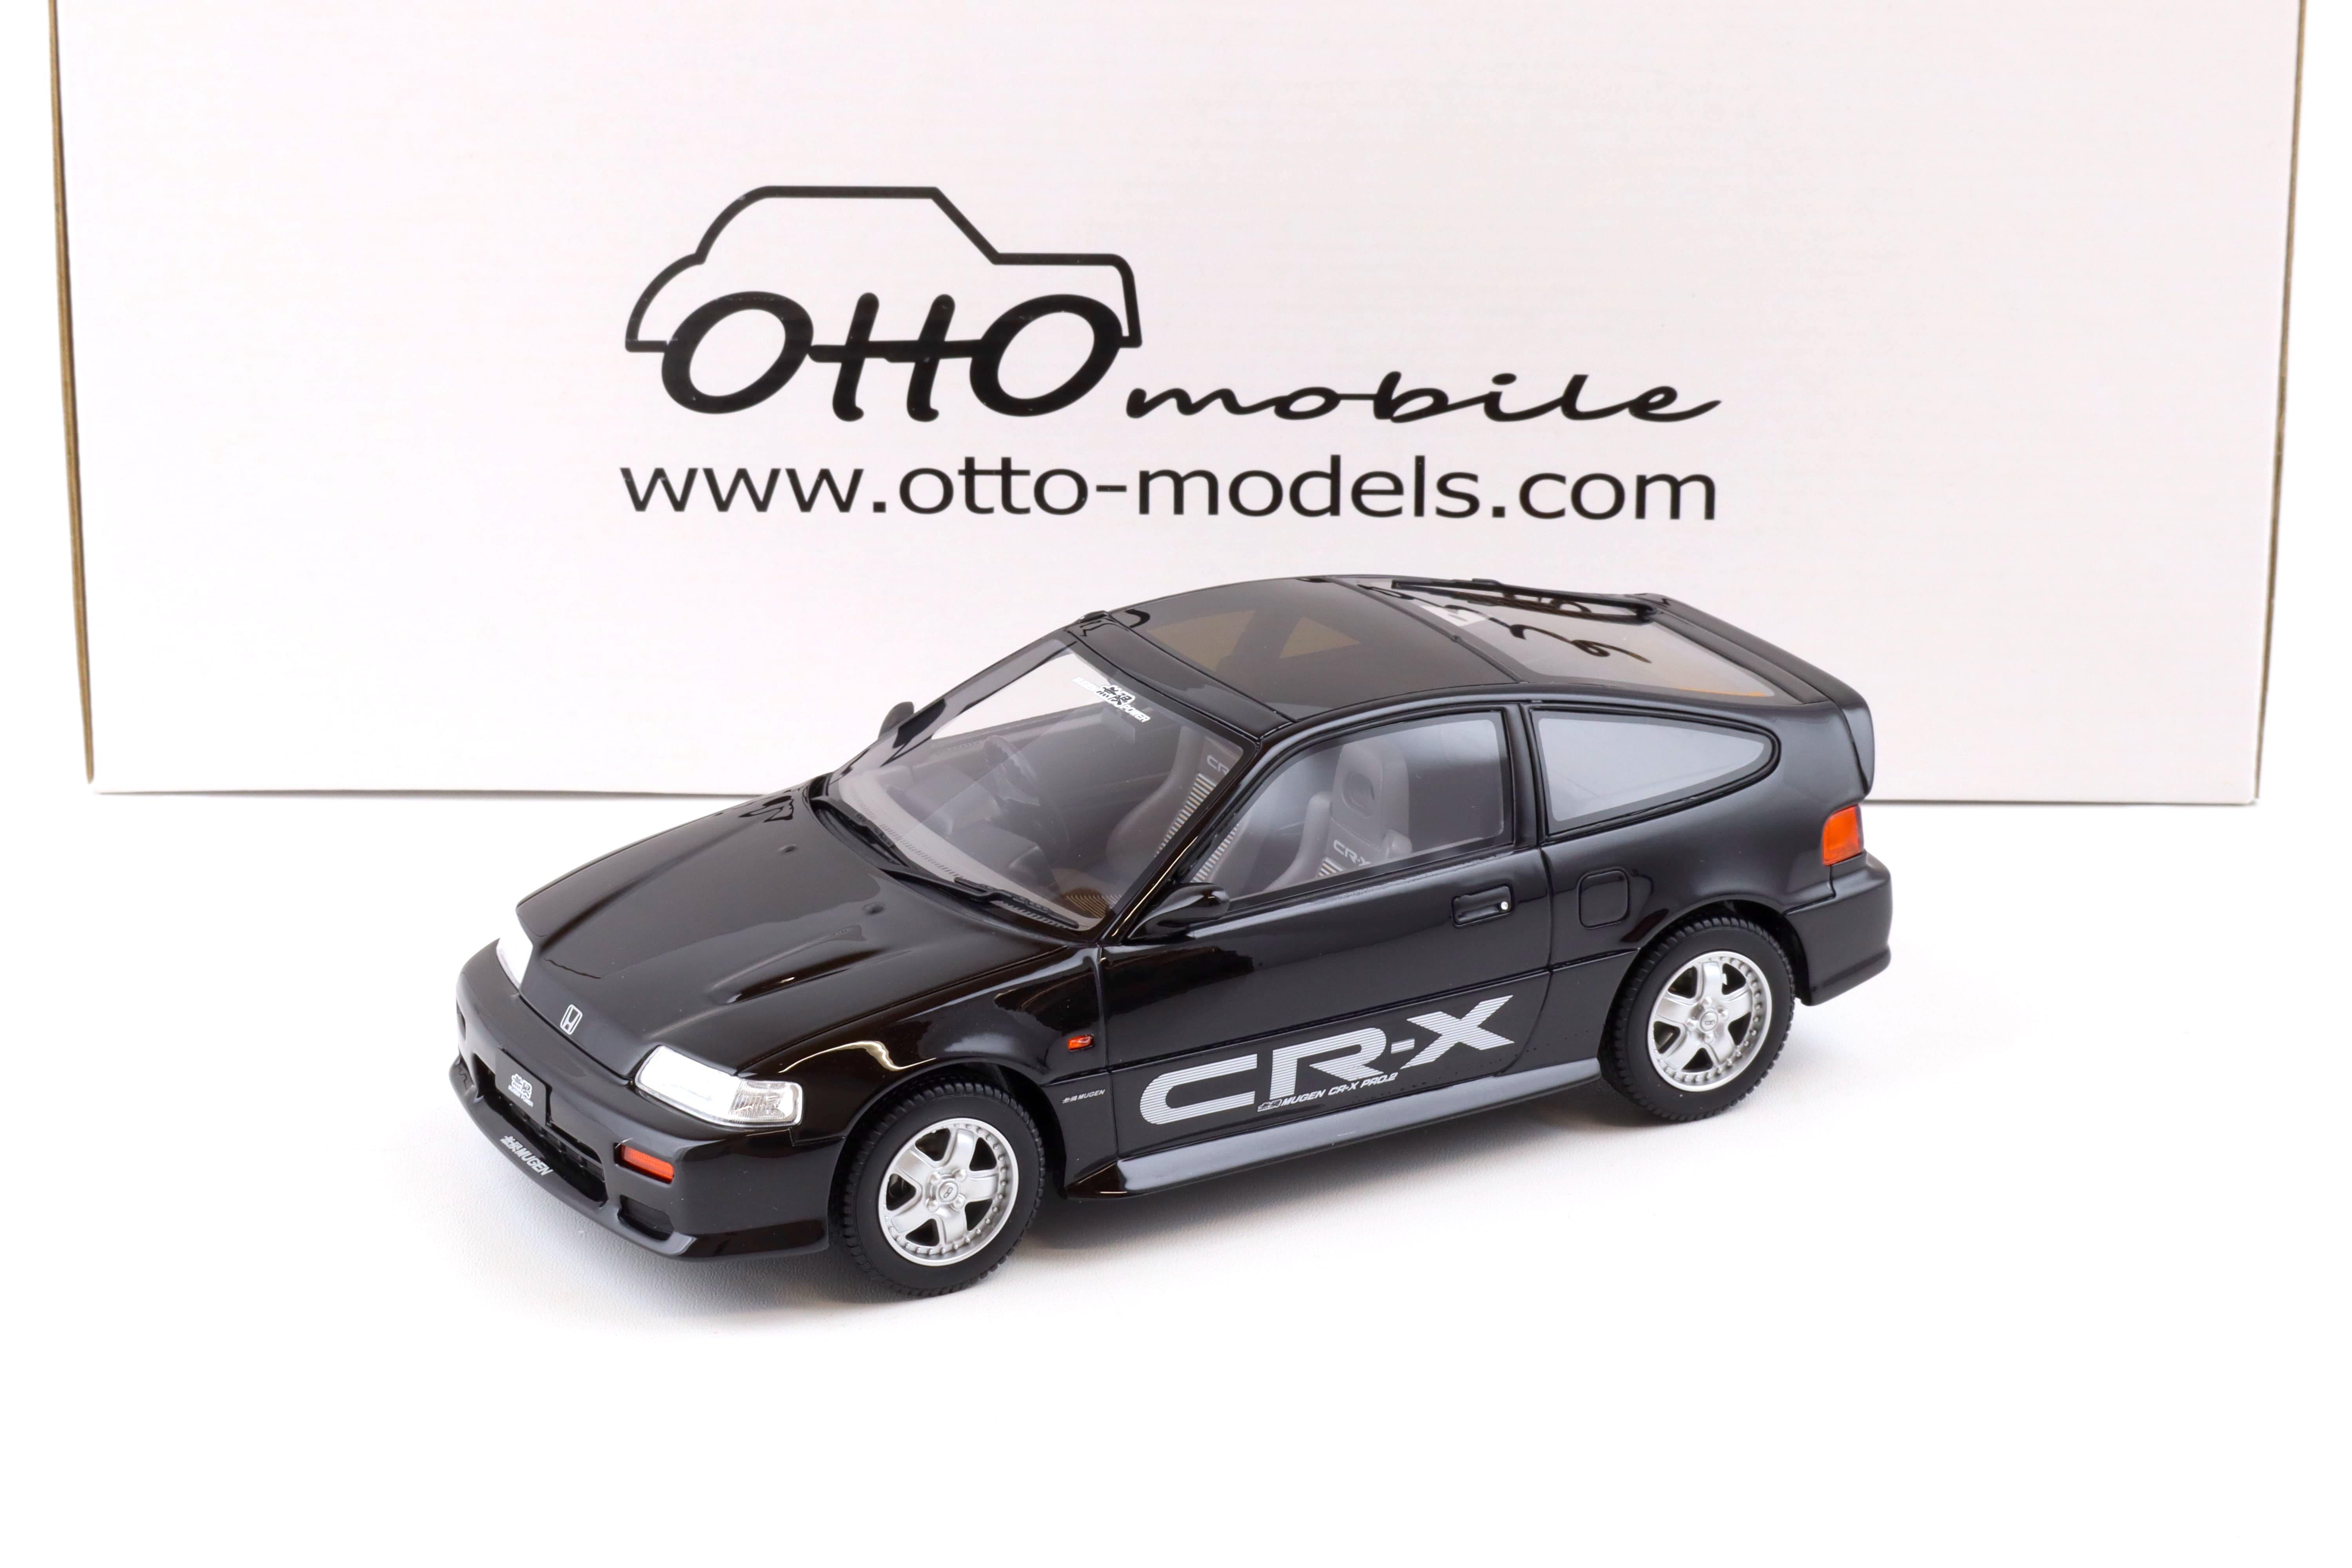 1:18 OTTO mobile OT1015 Honda CR-X PRO 2 MUGEN black 1989